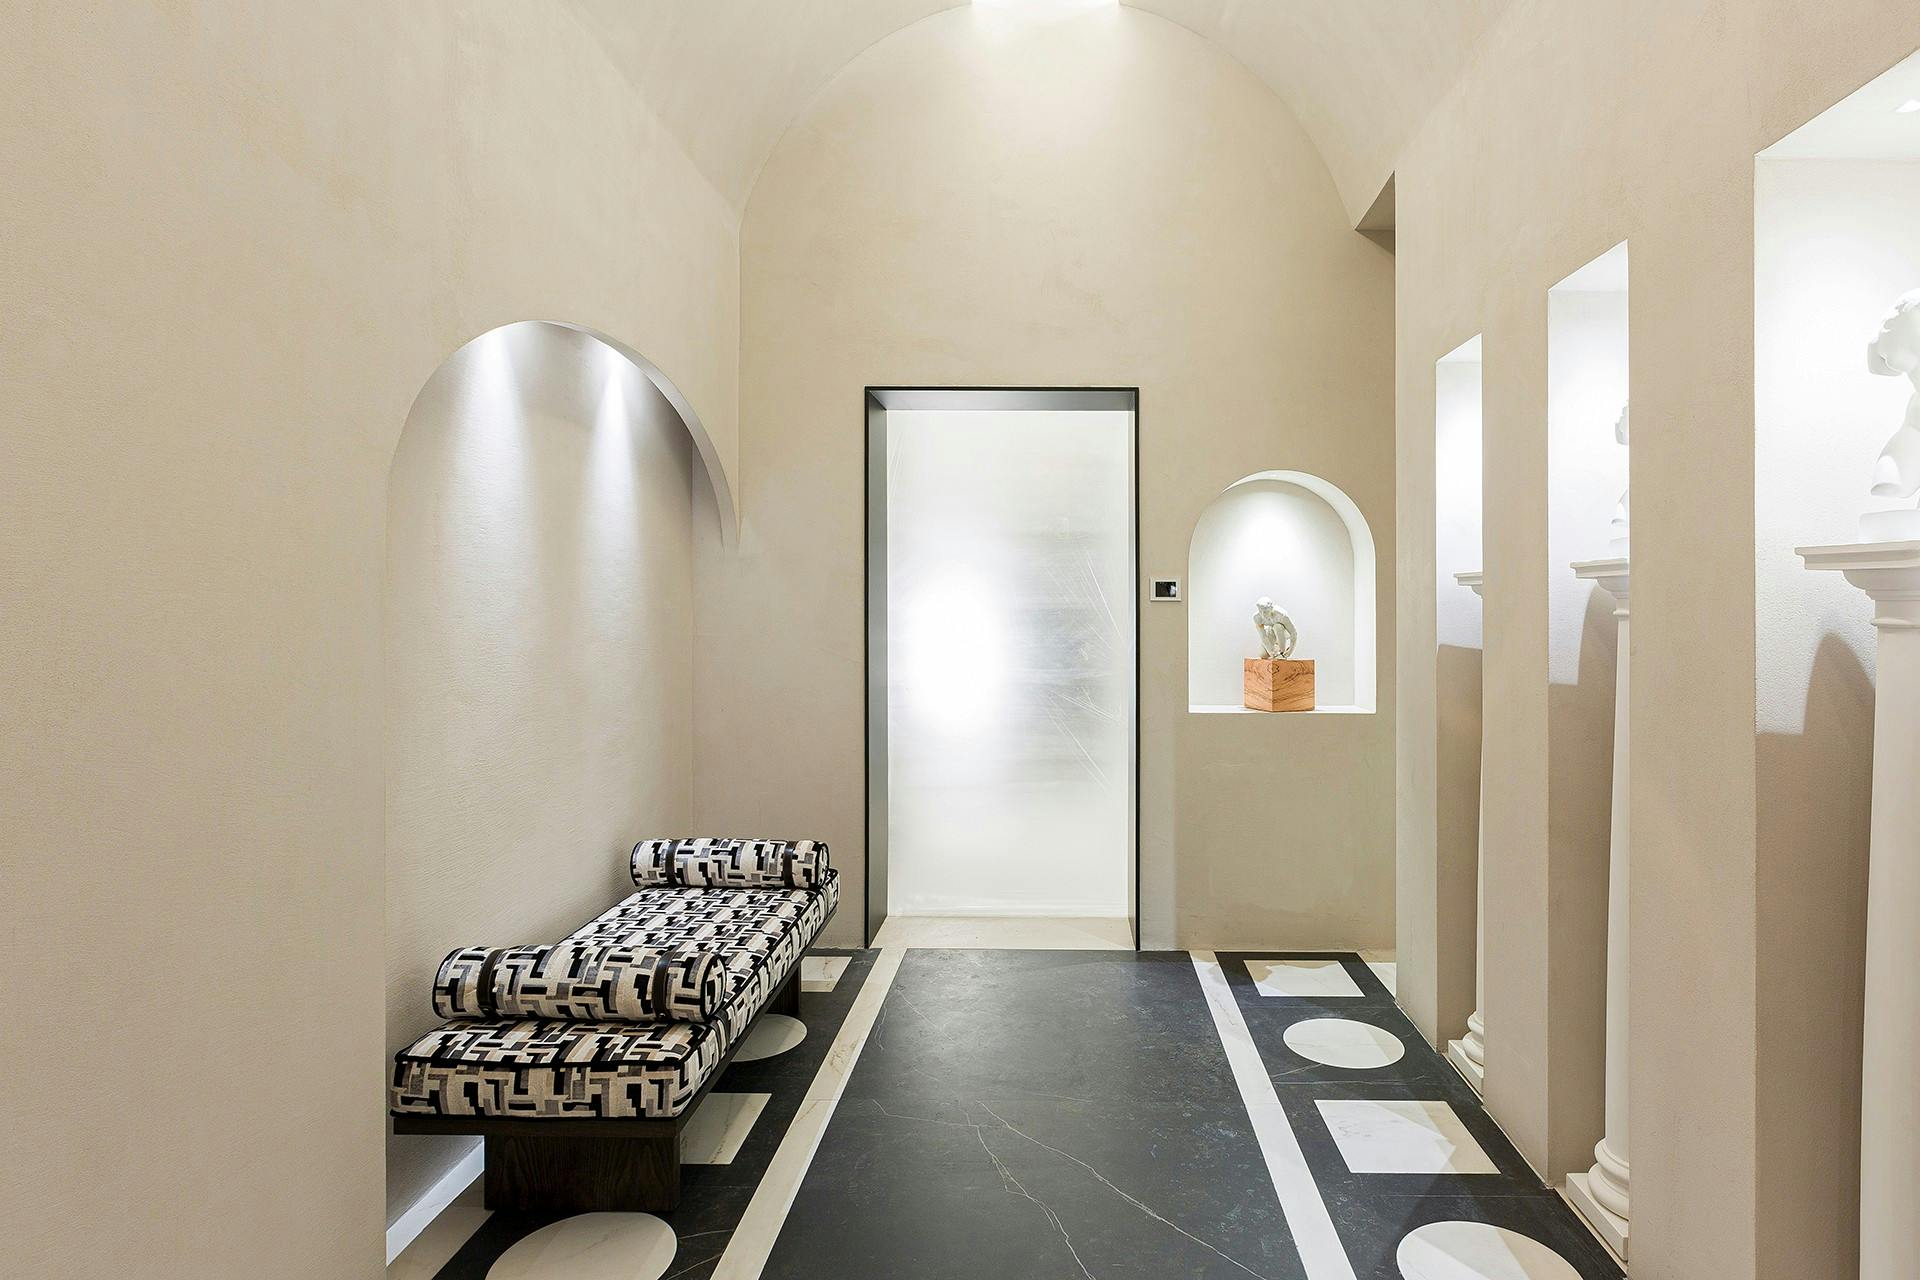 Imagen número 78 de Un baño público contemporáneo inspirado en las termas romanas